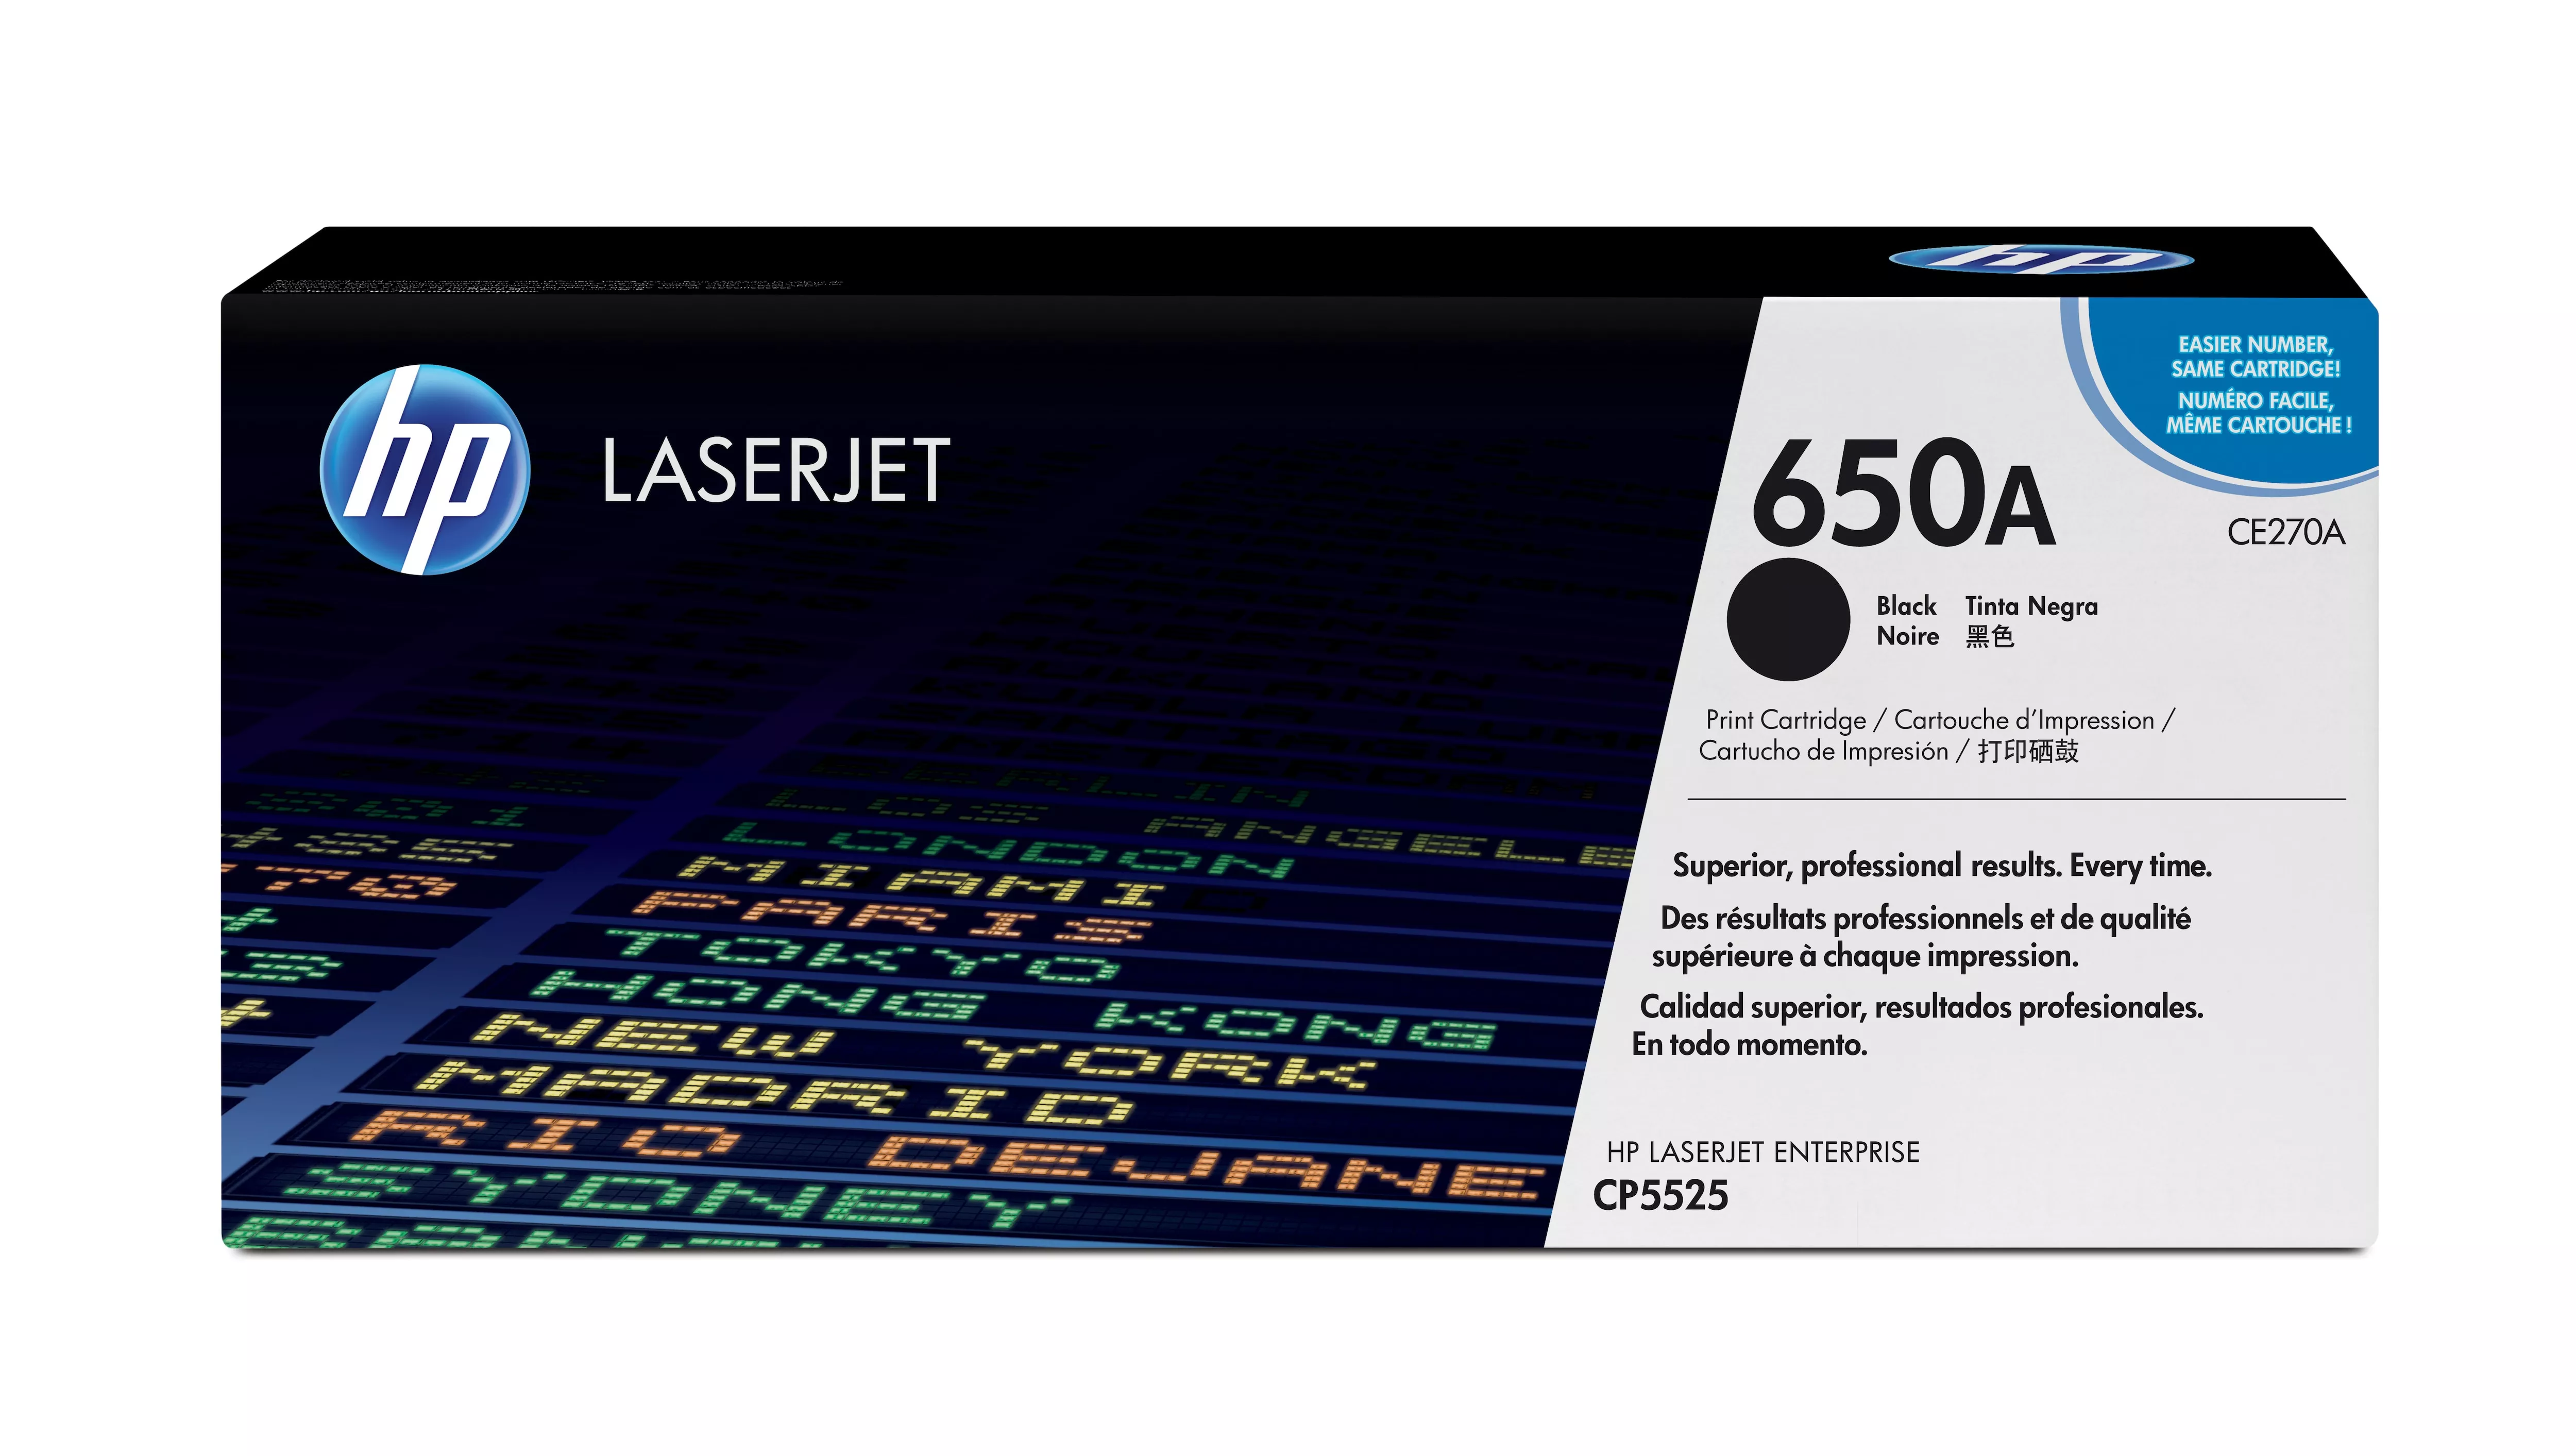 Achat HP original Colour LaserJet CE270A Toner cartridge black au meilleur prix